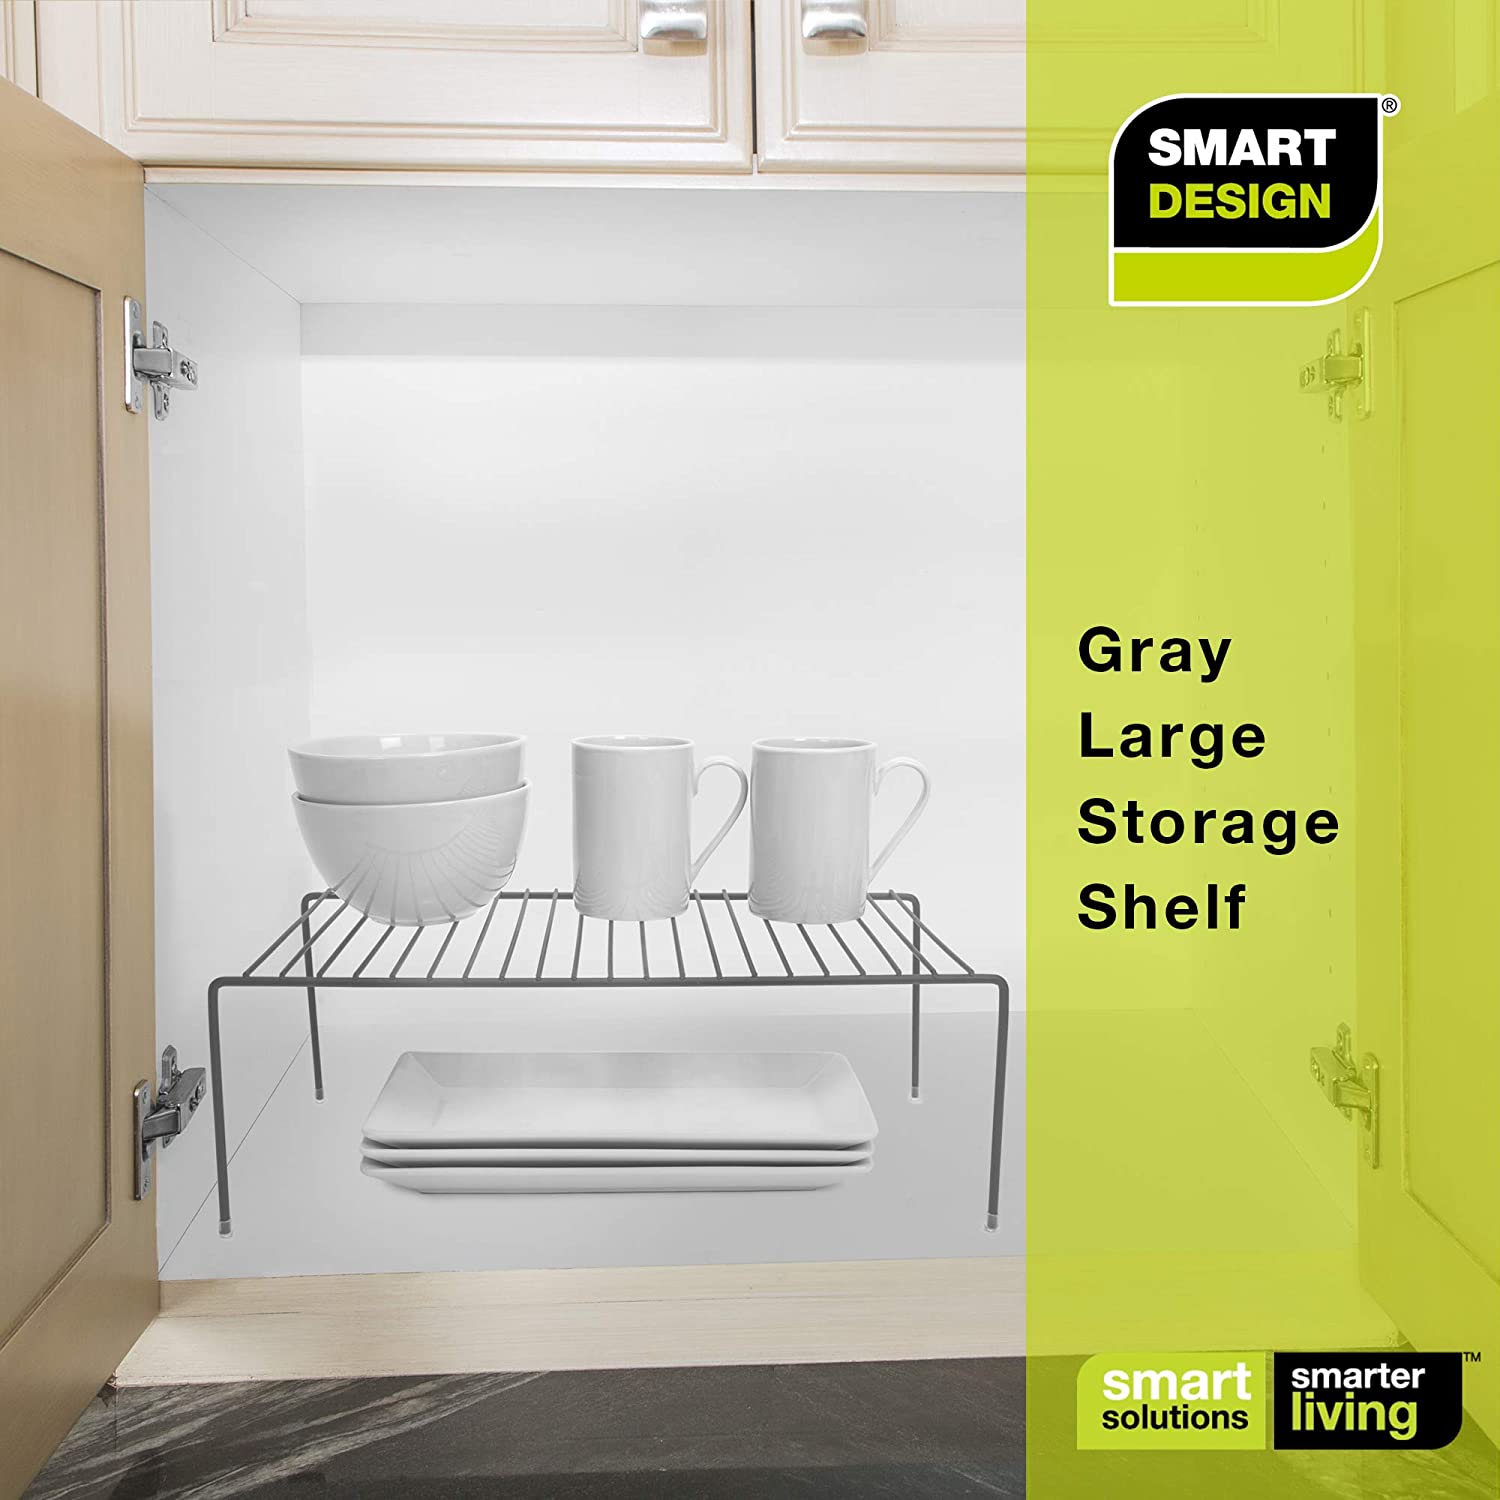 https://www.shopsmartdesign.com/cdn/shop/products/large-cabinet-storage-shelf-rack-smart-design-kitchen-8233638a24-incrementing-number-383949.jpg?v=1679341232